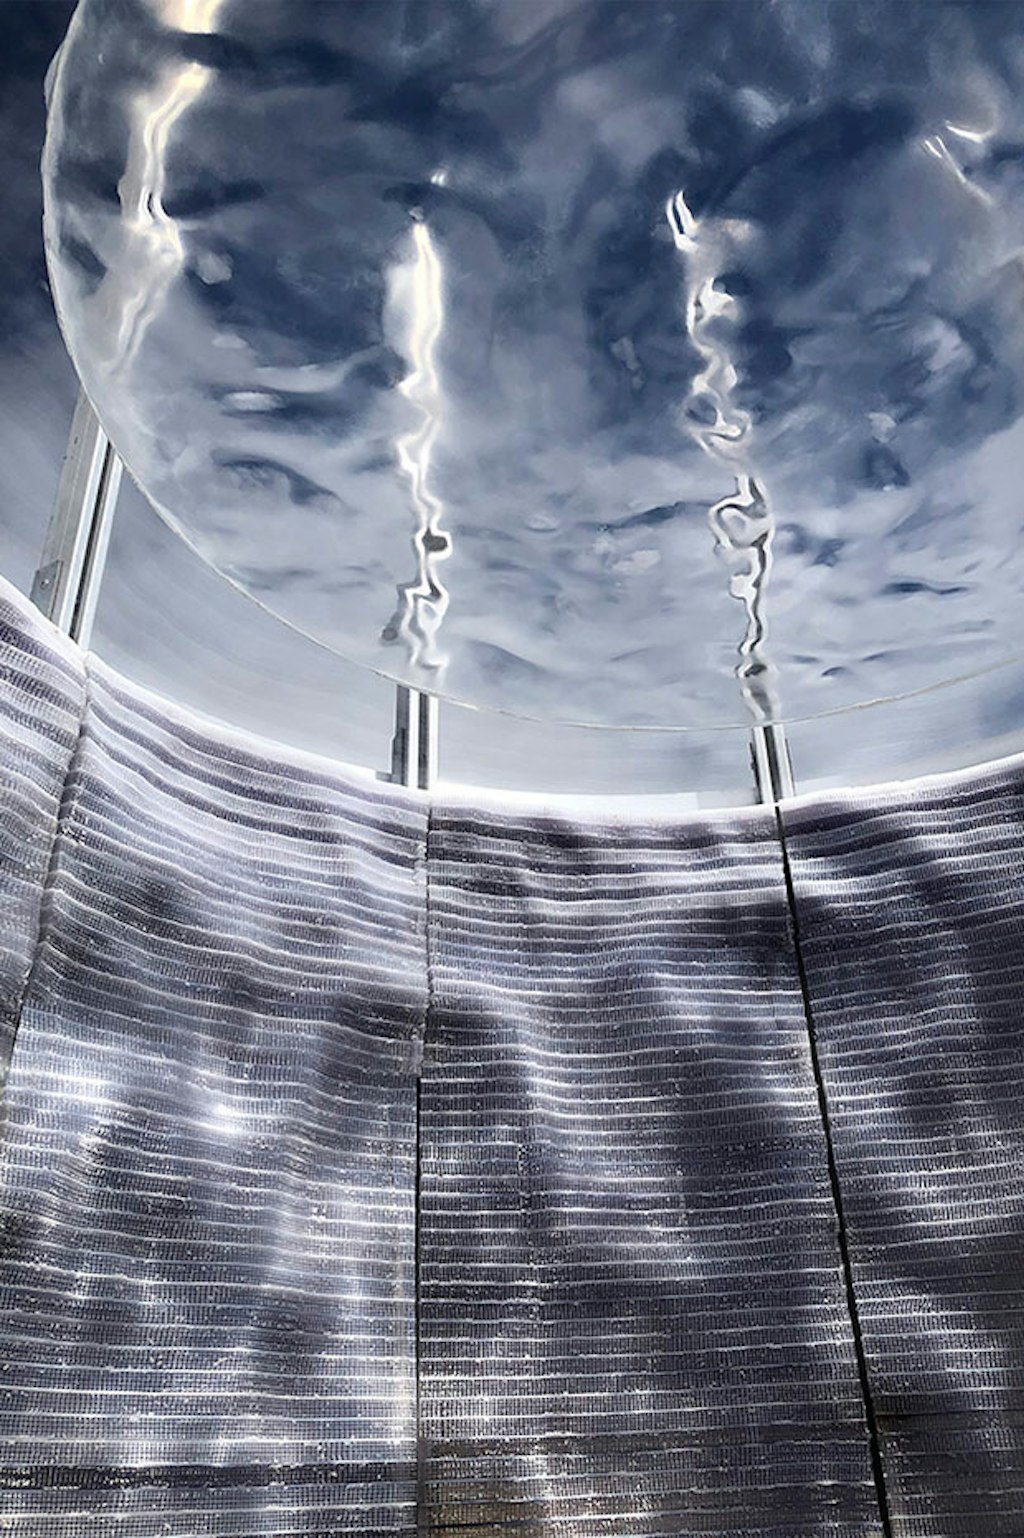 Water Booth - Fremantle Biennale 2019. 